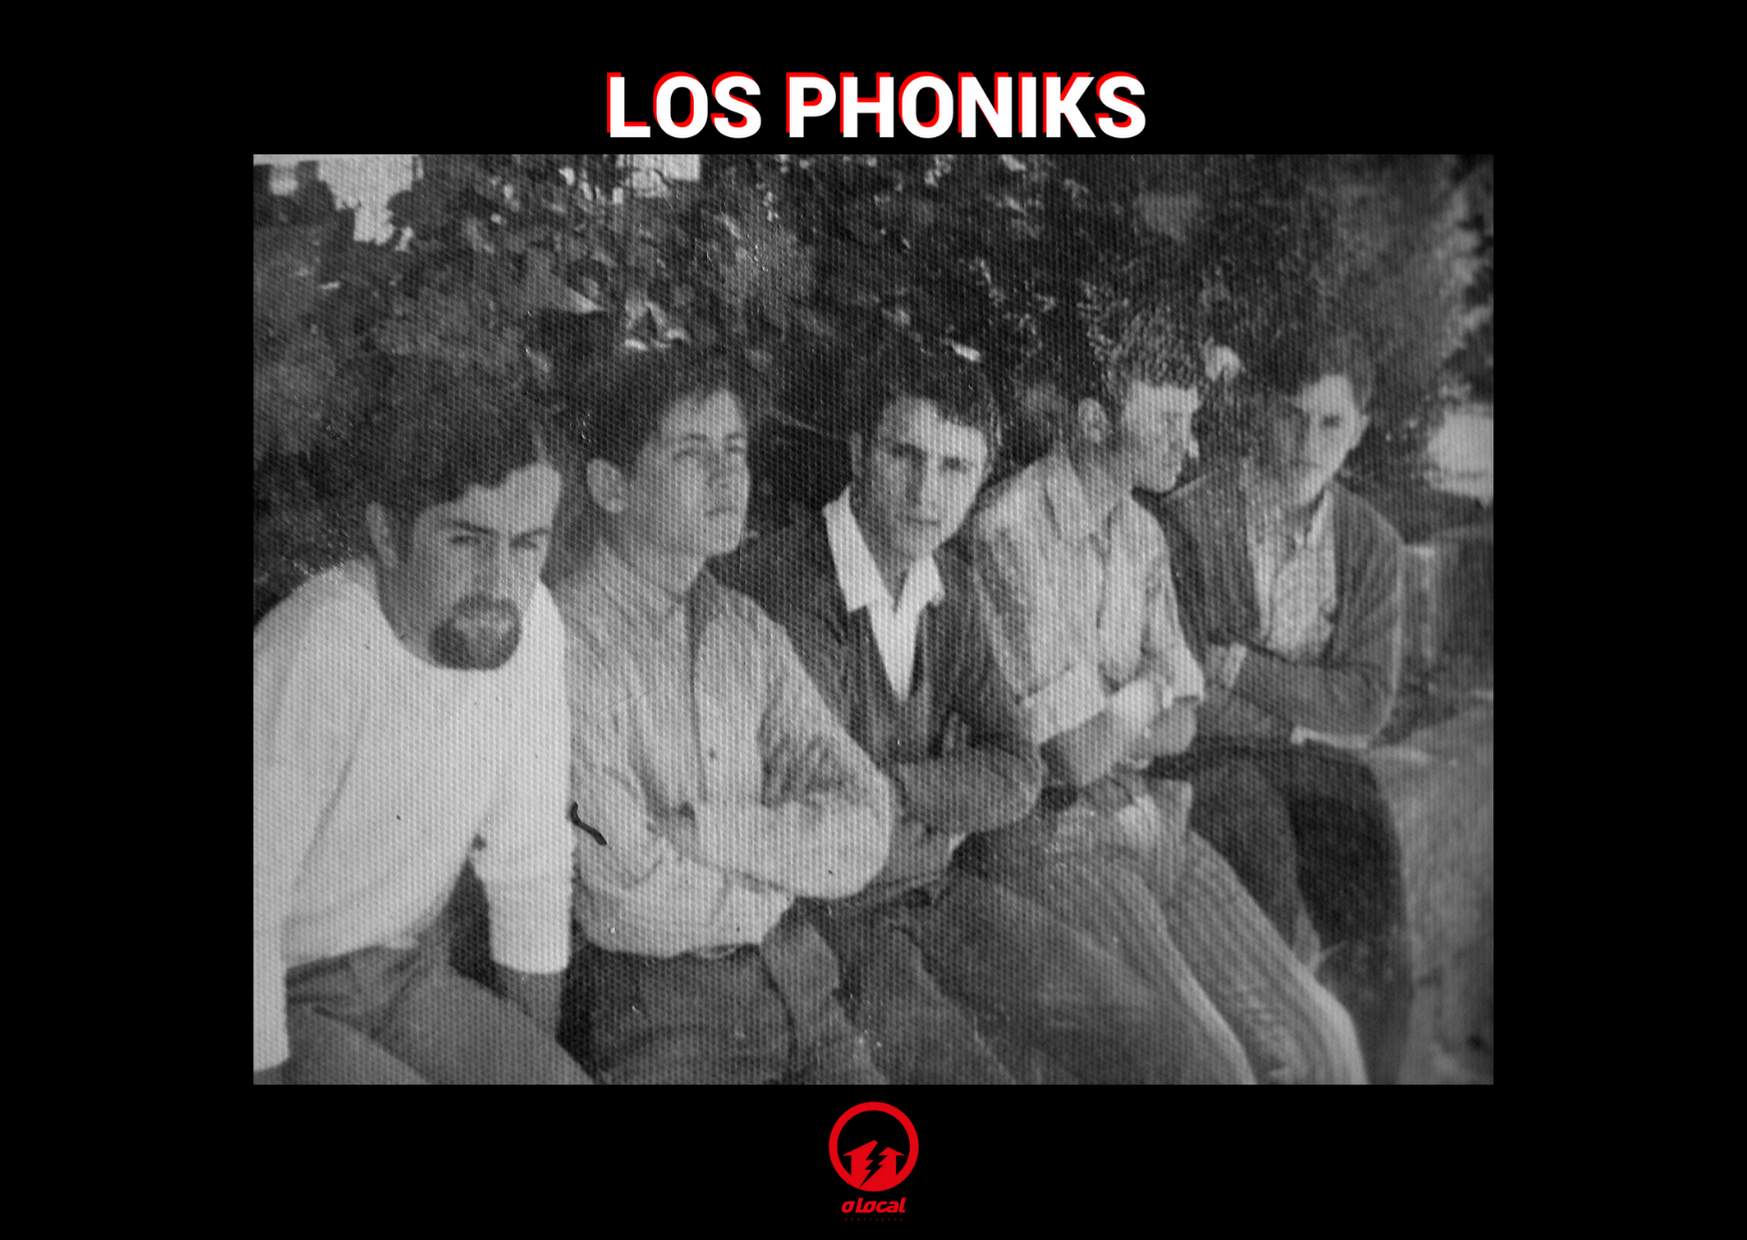 CLASE DE HISTORIA 6: LOS PHONIKS